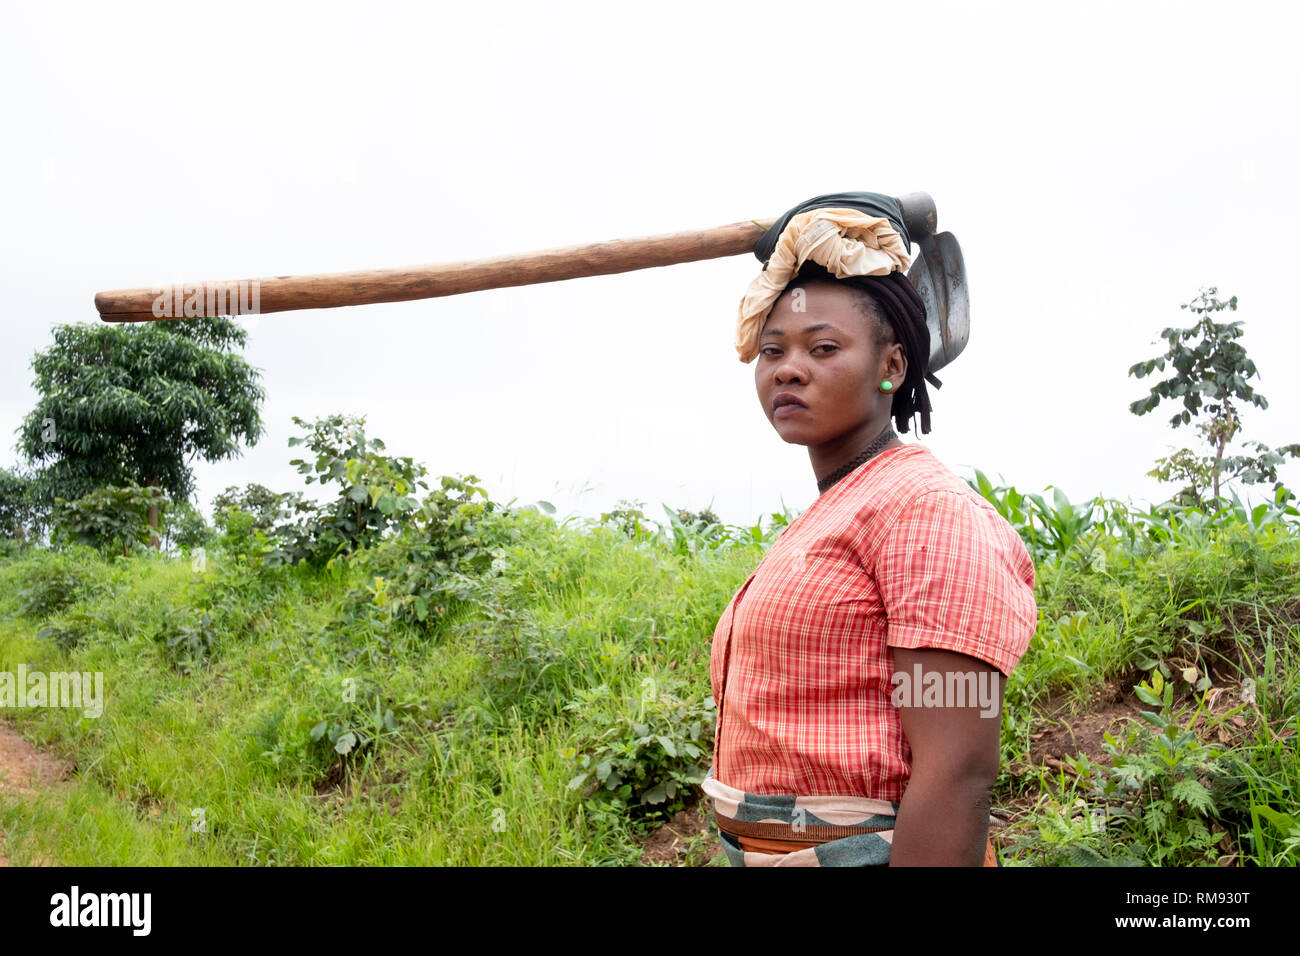 Un villageois s'acquitte d'une pioche sur sa tête quand elle marche dans la maison Jubele, Dowa, Malawi Banque D'Images